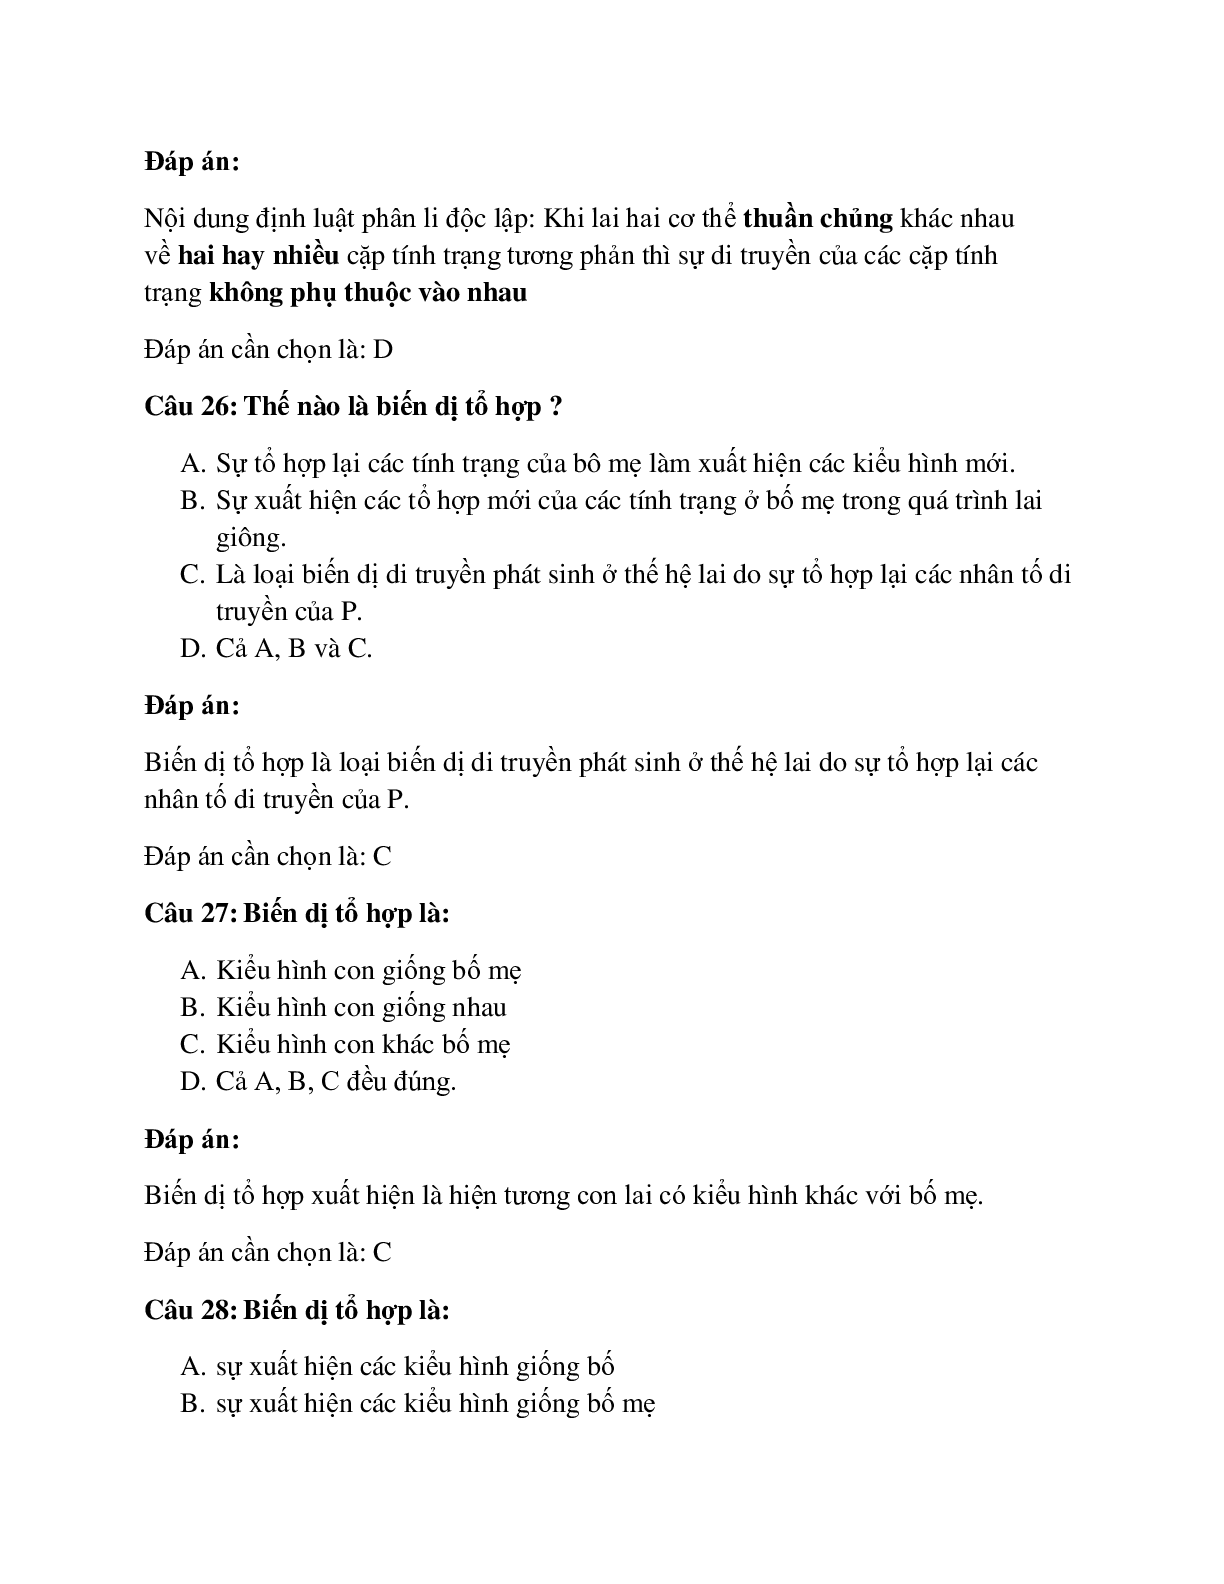 31 câu Trắc nghiệm Sinh học 9 Bài 4 có đáp án 2023: Lai hai cặp tính trạng (trang 10)